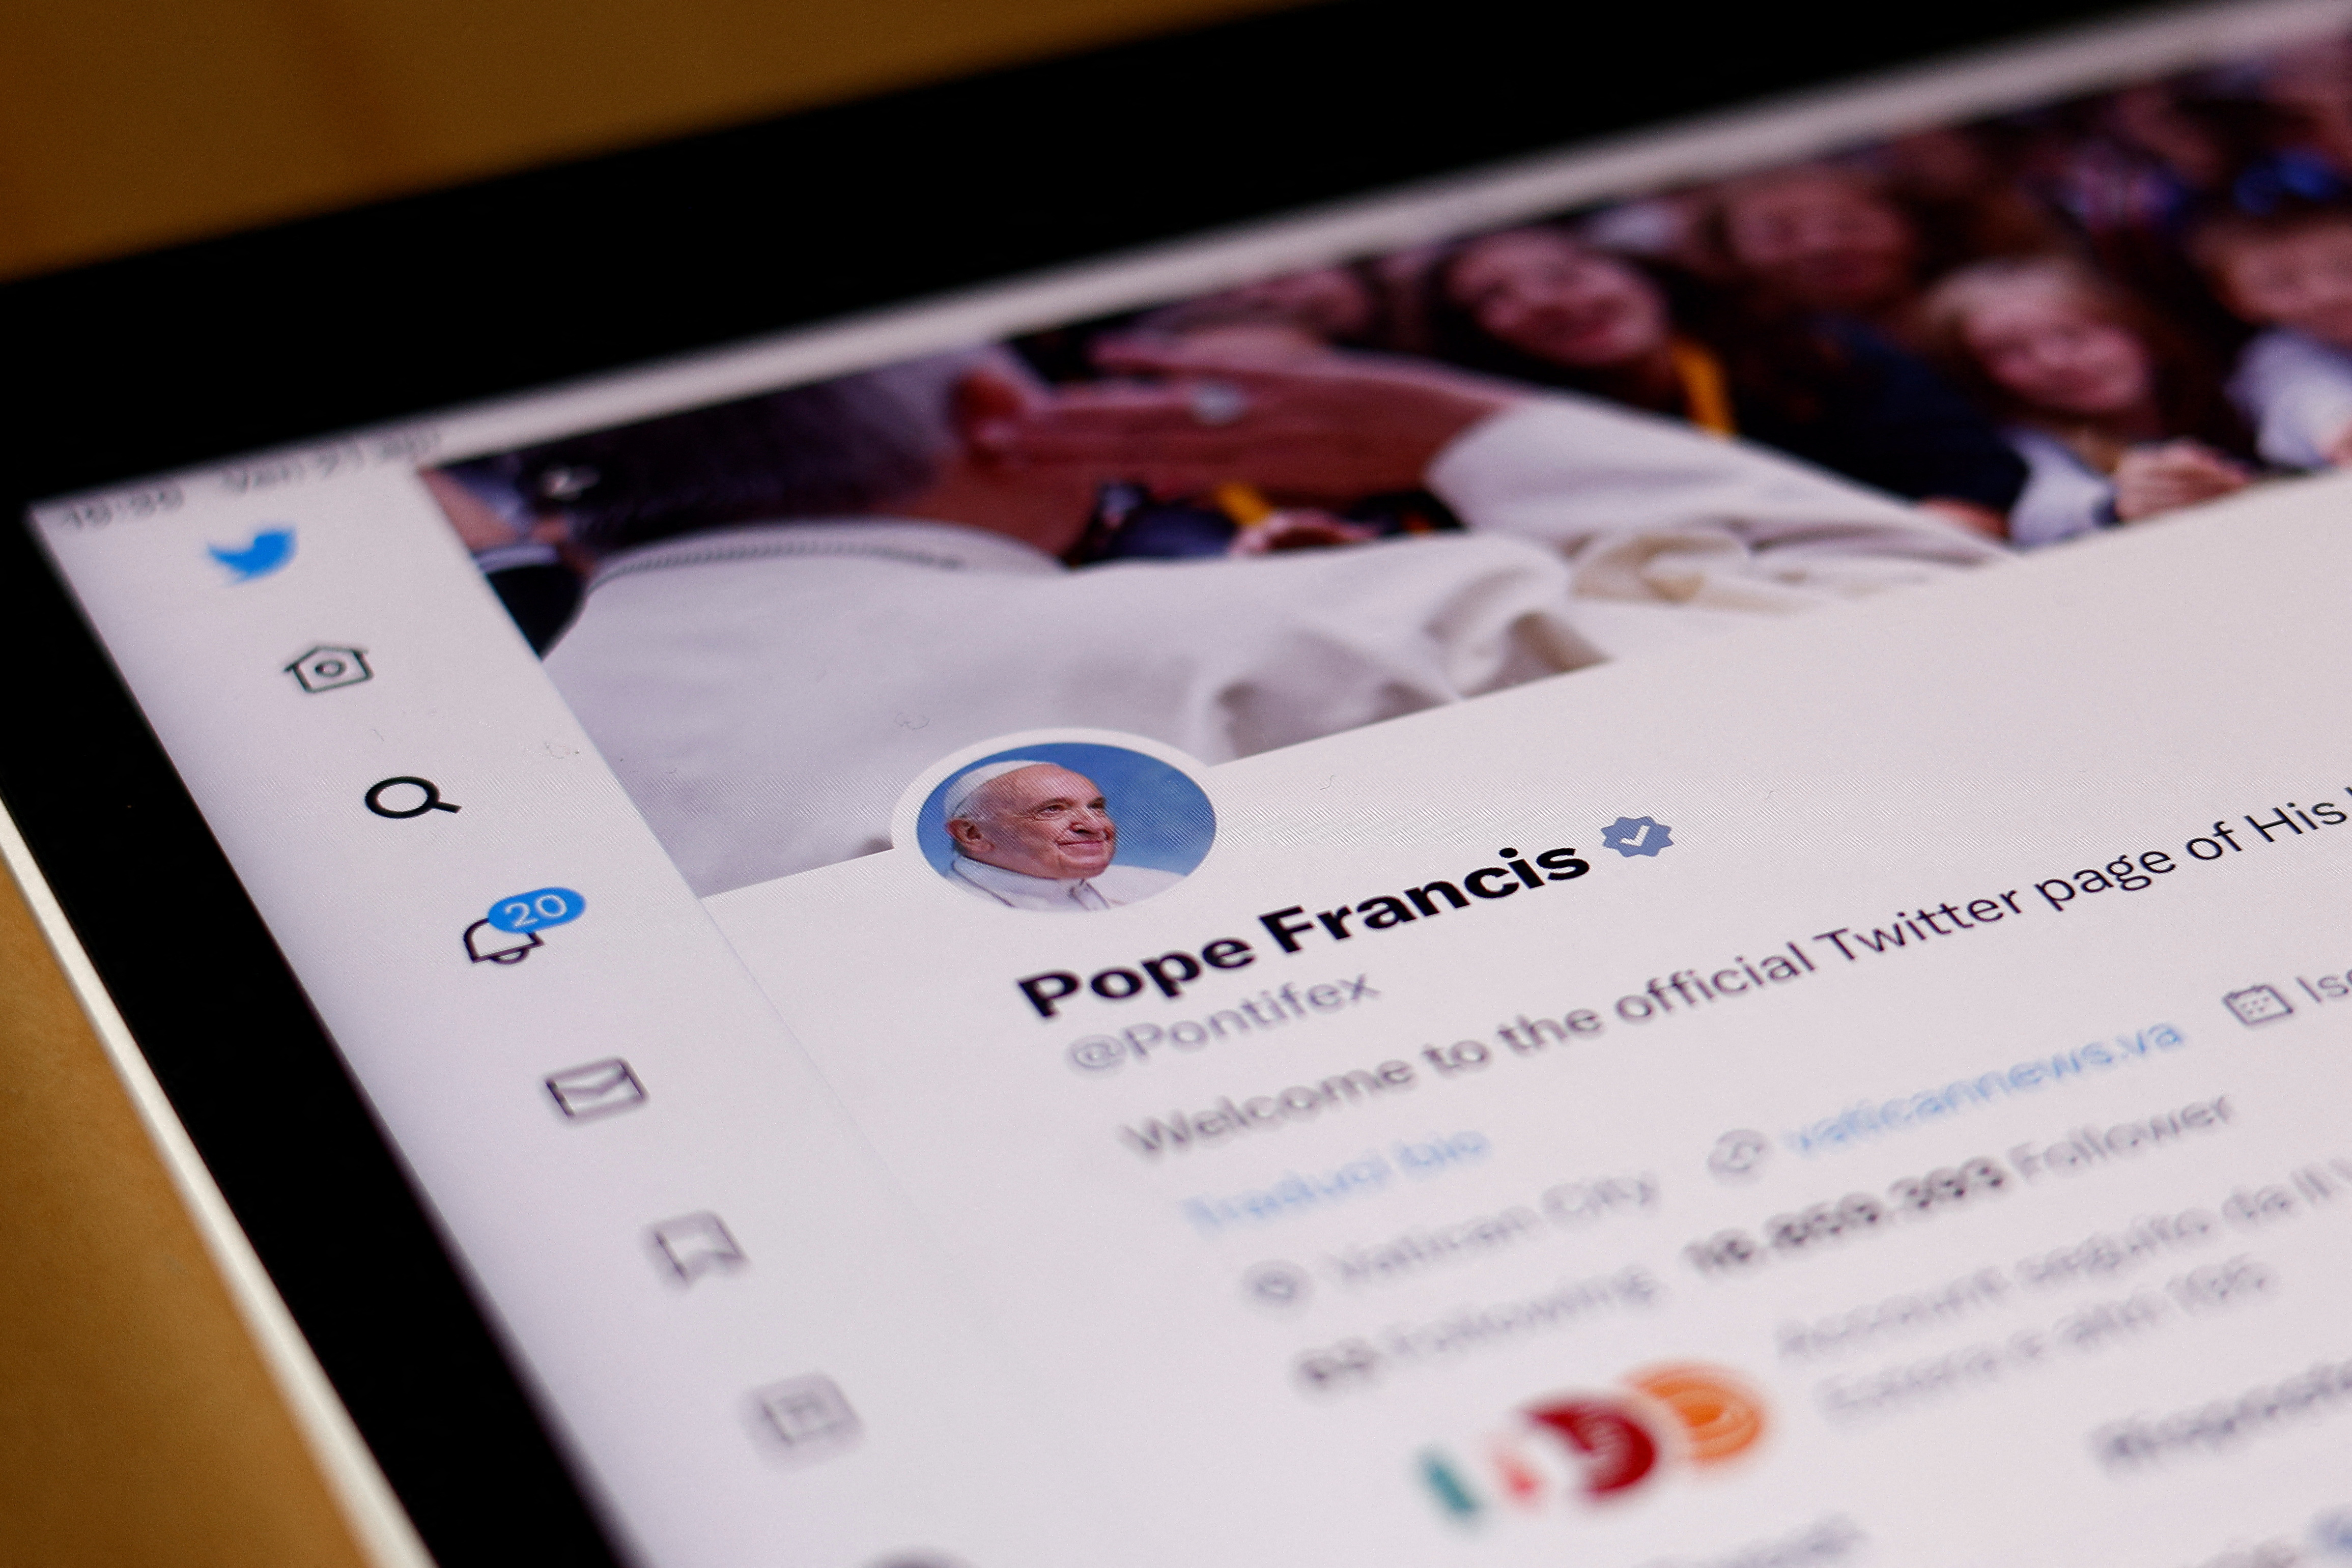 El Papa Francisco pierde el estado azul verificado de Twitter